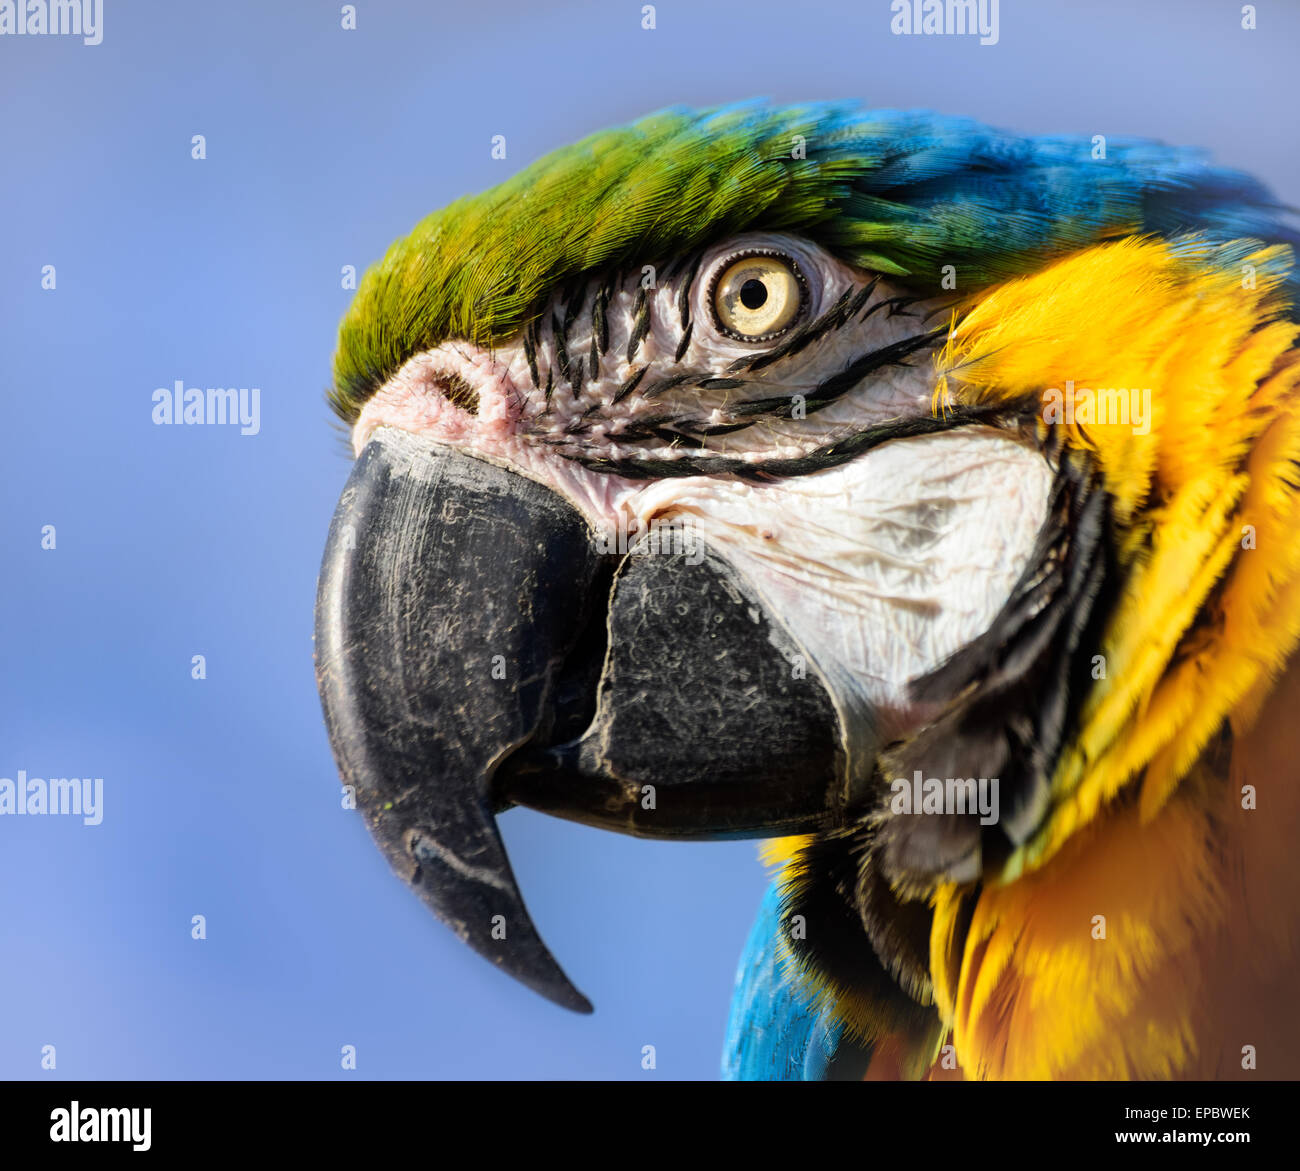 Macaw Parrot portrait, bleu et jaune, New York Banque D'Images